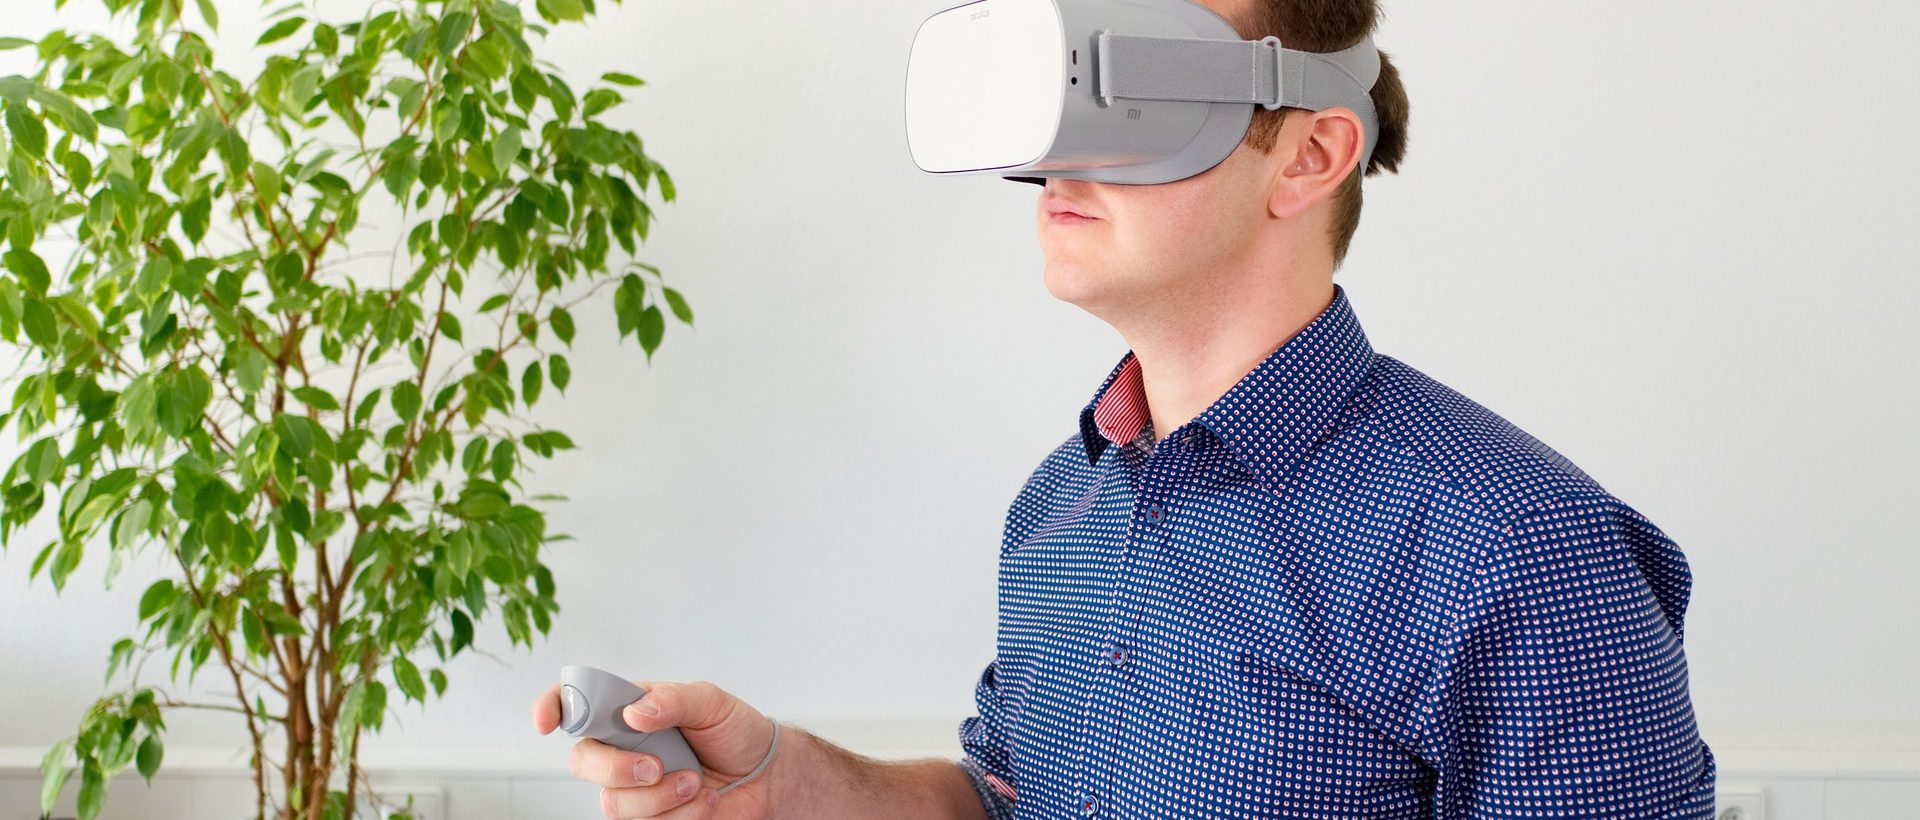 Une formation en réalité virtuelle et augmentée au Québec